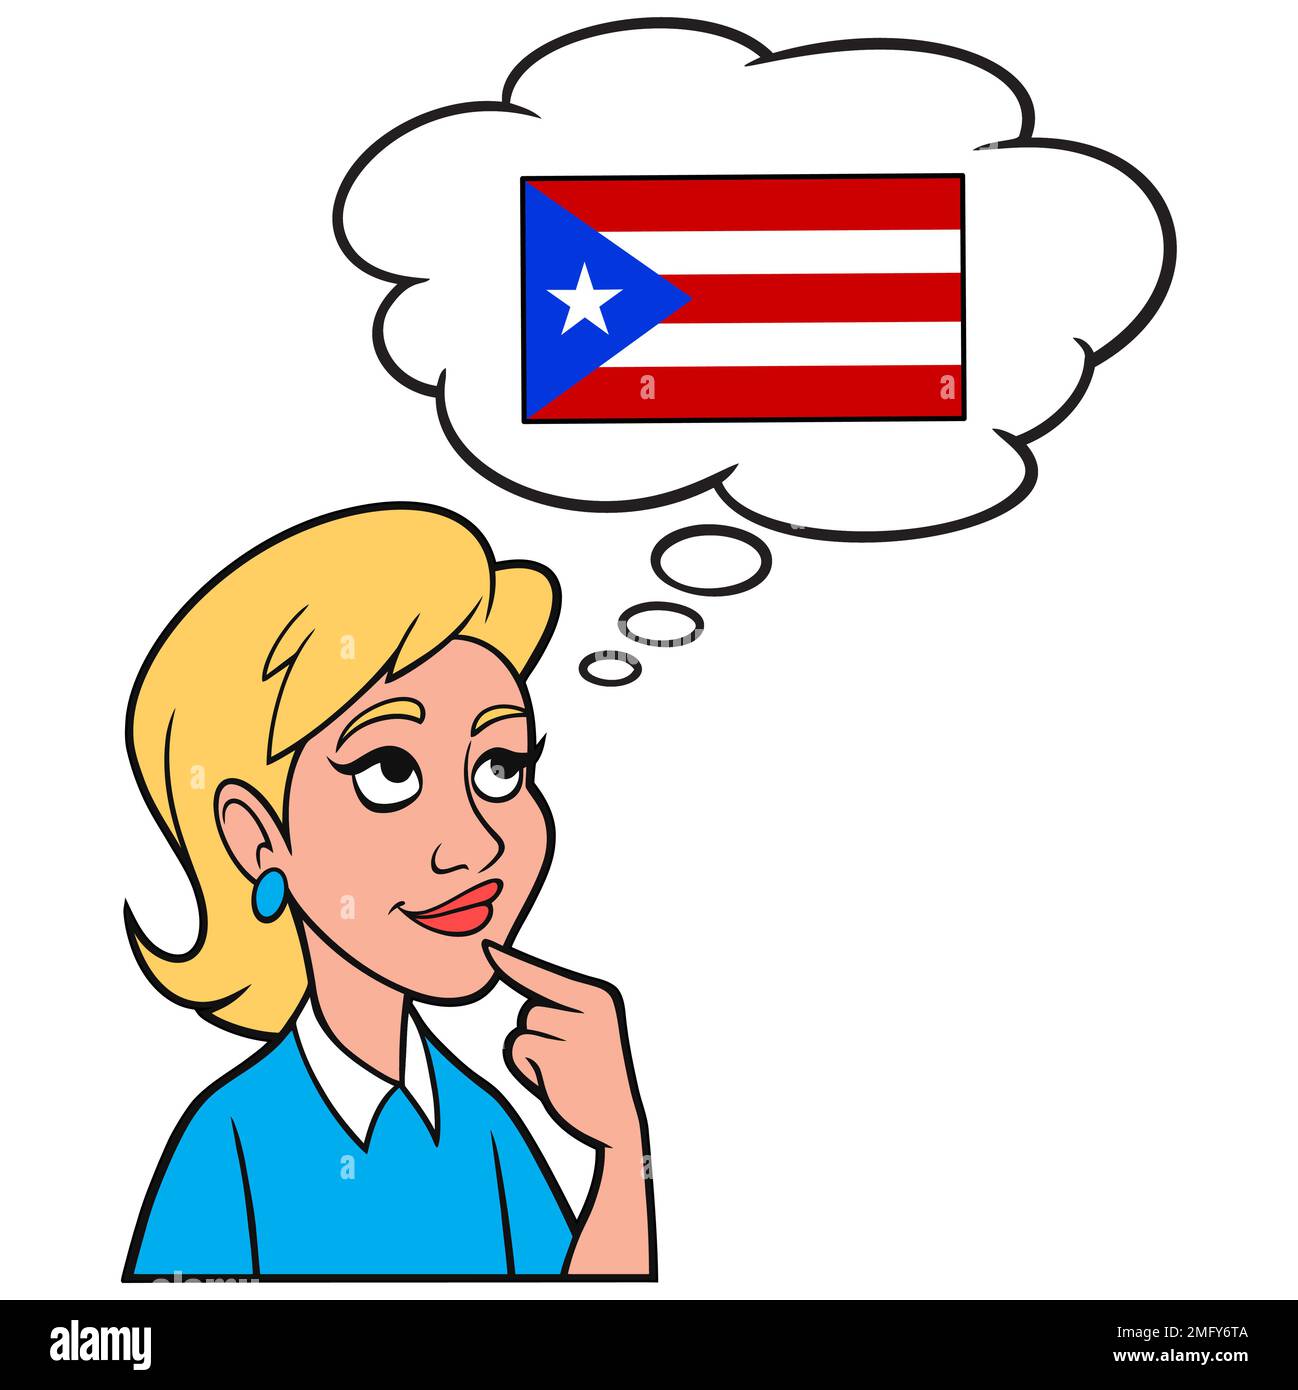 Ein Mädchen, das über Puerto Rico nachdenkt - Ein Zeichentrickfilm, in dem ein Mädchen über Puerto Rico nachdenkt. Stock Vektor